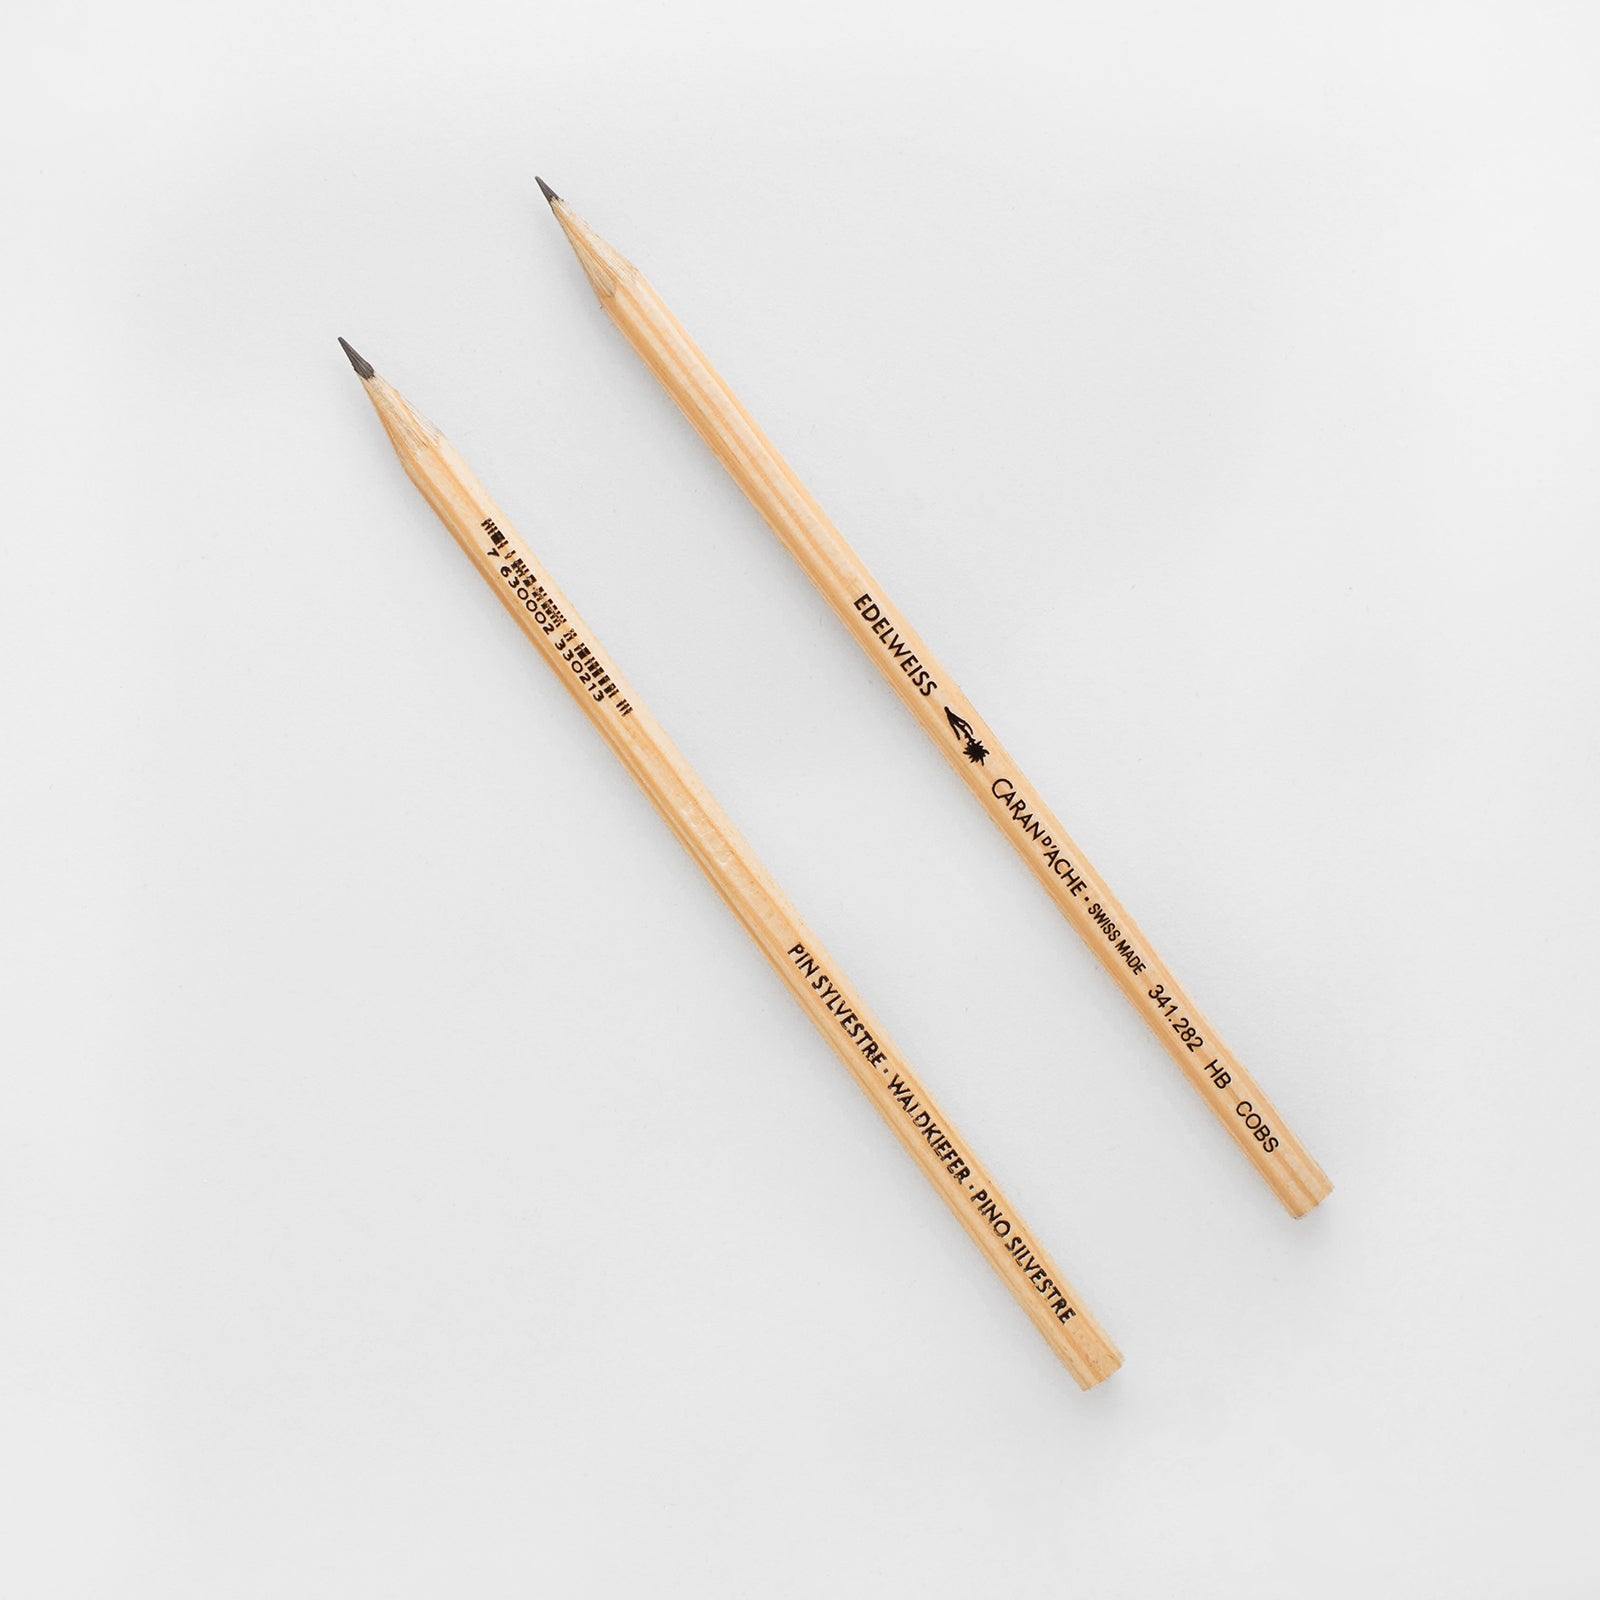 Caran d'Ache Edelweiss Scots Pine Swiss Wood Pencil 